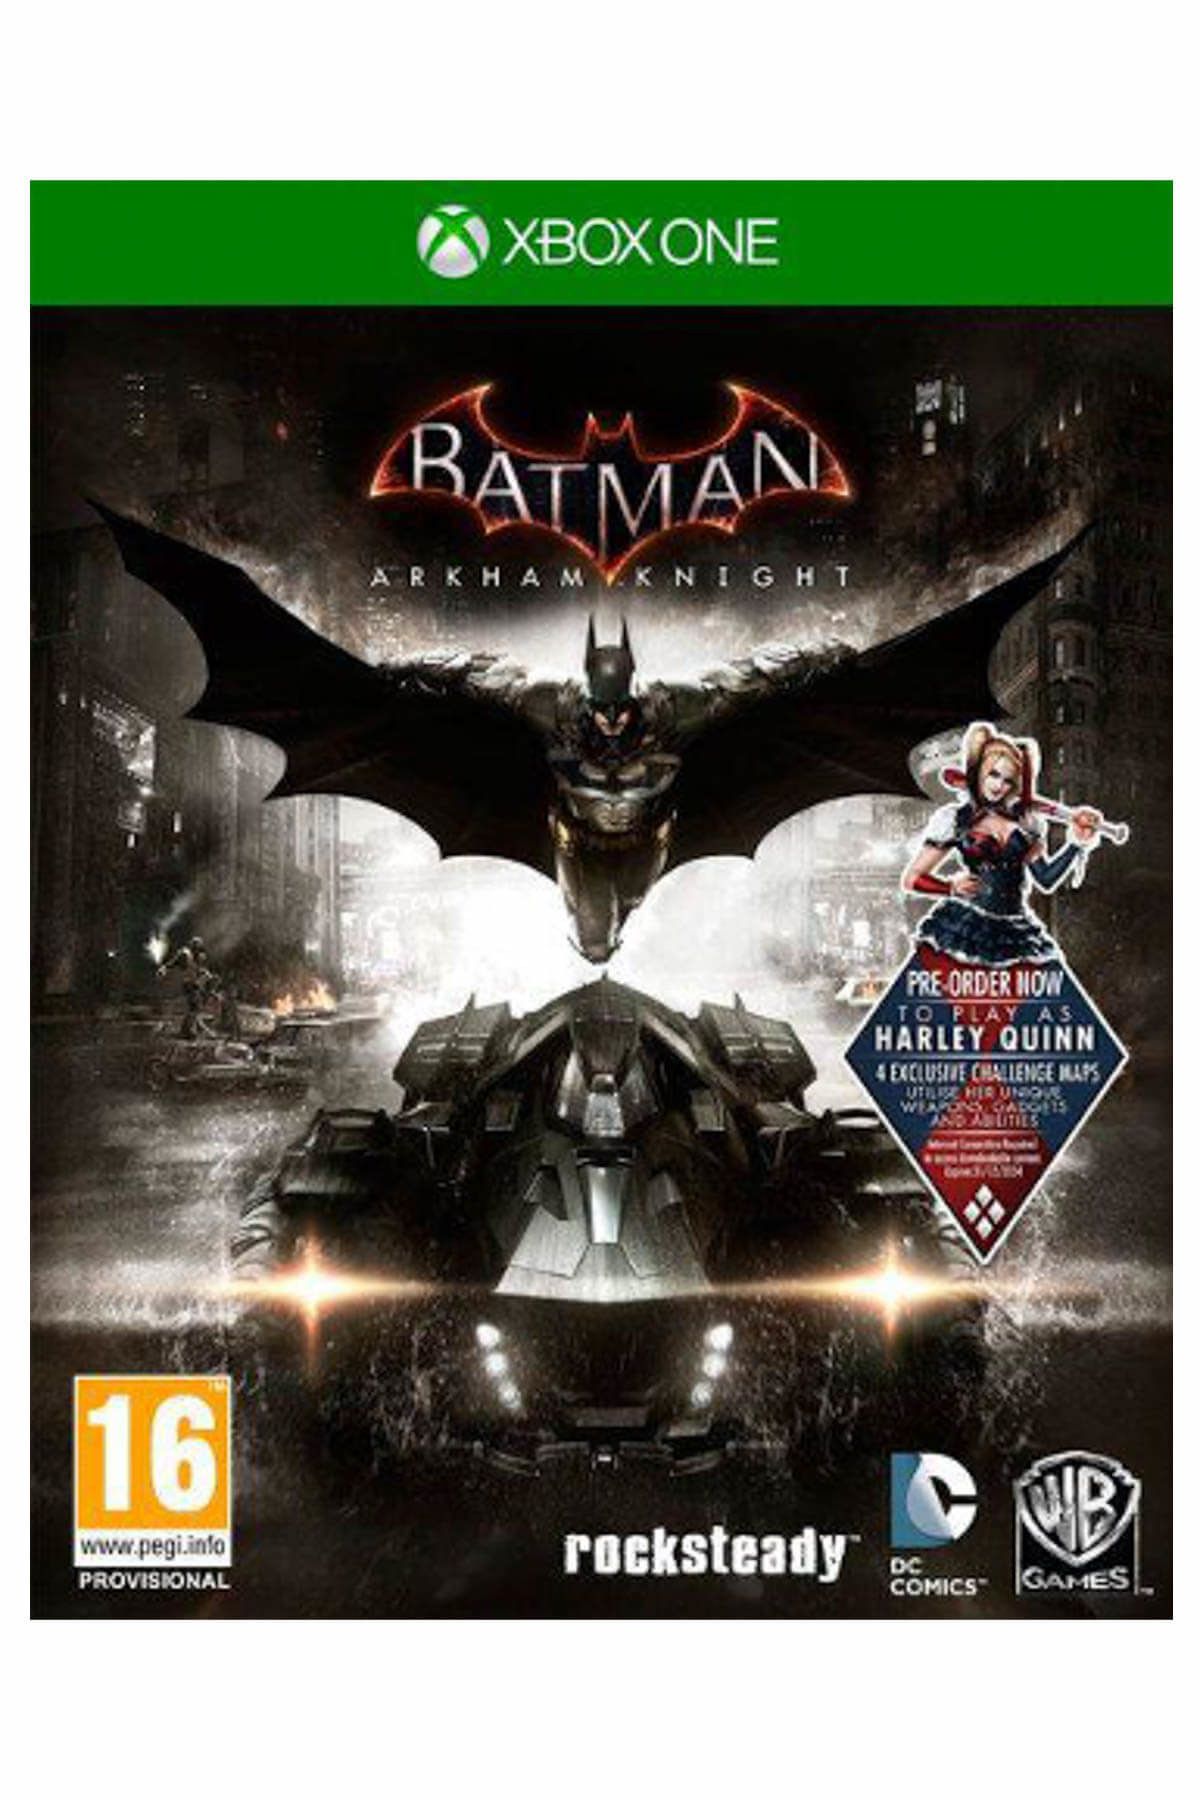 Wb Games Xbox One Batman Arkham Knight